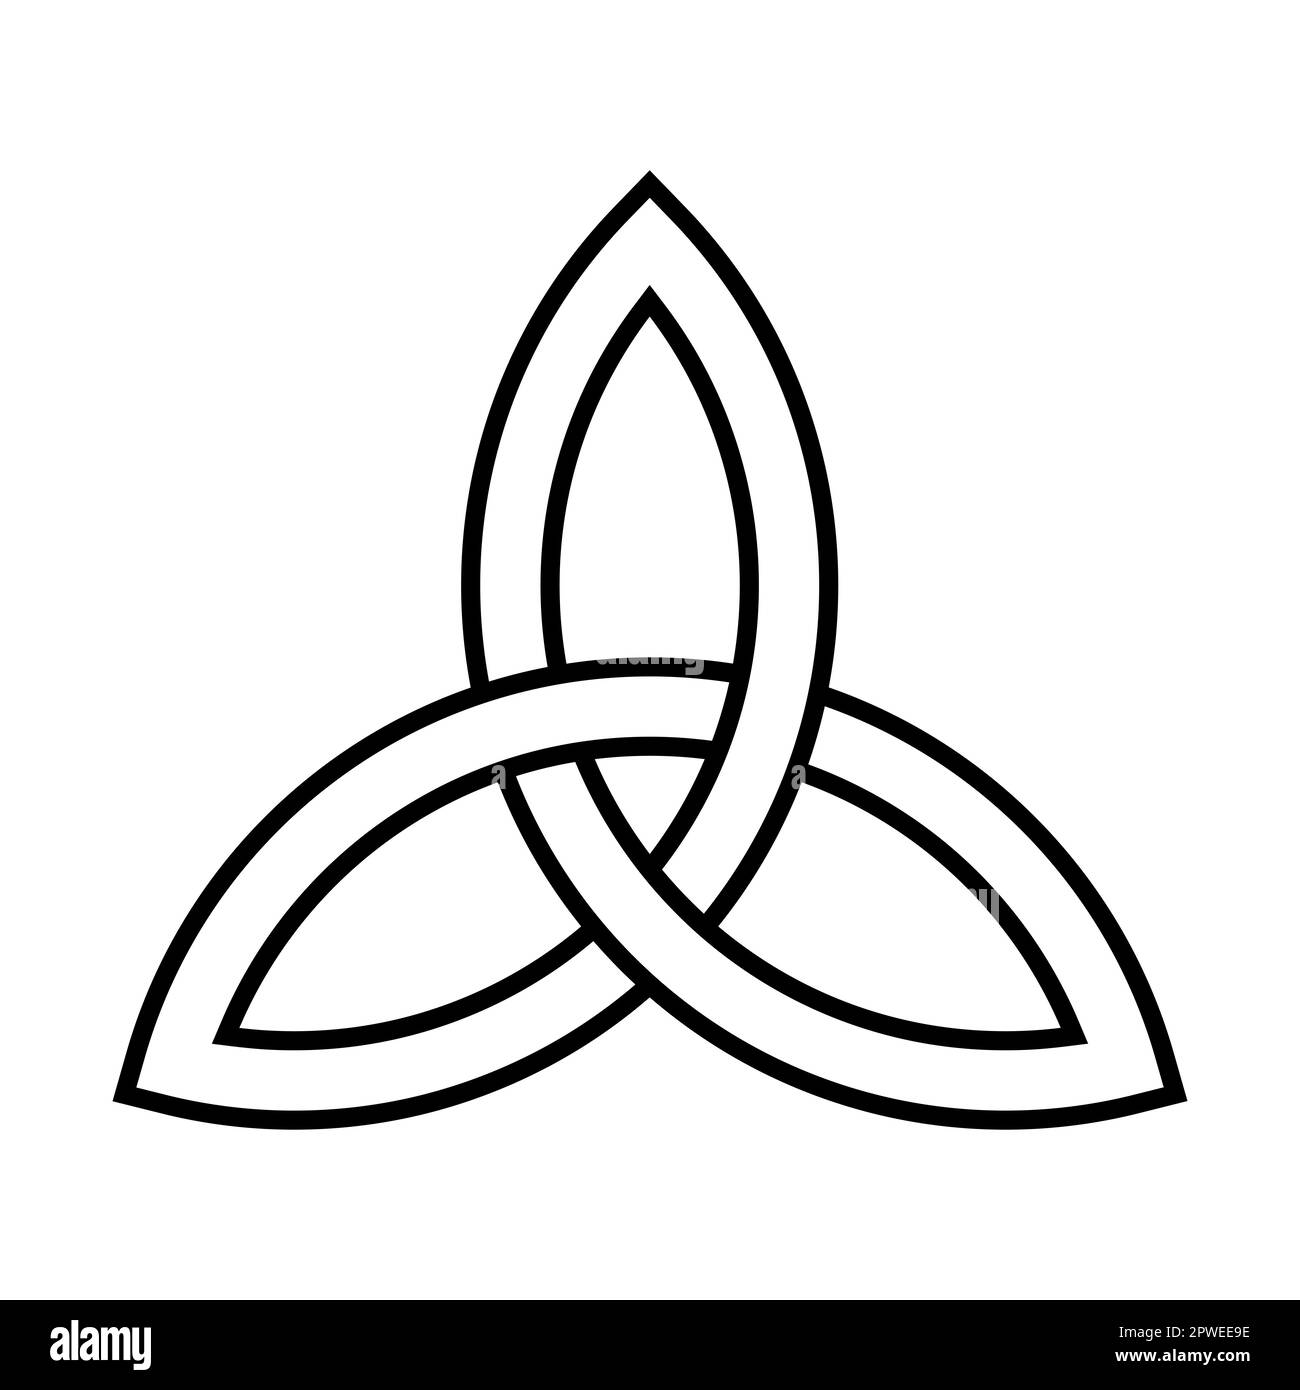 Triquetra, emblema della Trinità, formato dall'intreccio di tre archi uguali o porzioni di cerchi. Nodo triangolare celtico. Foto Stock